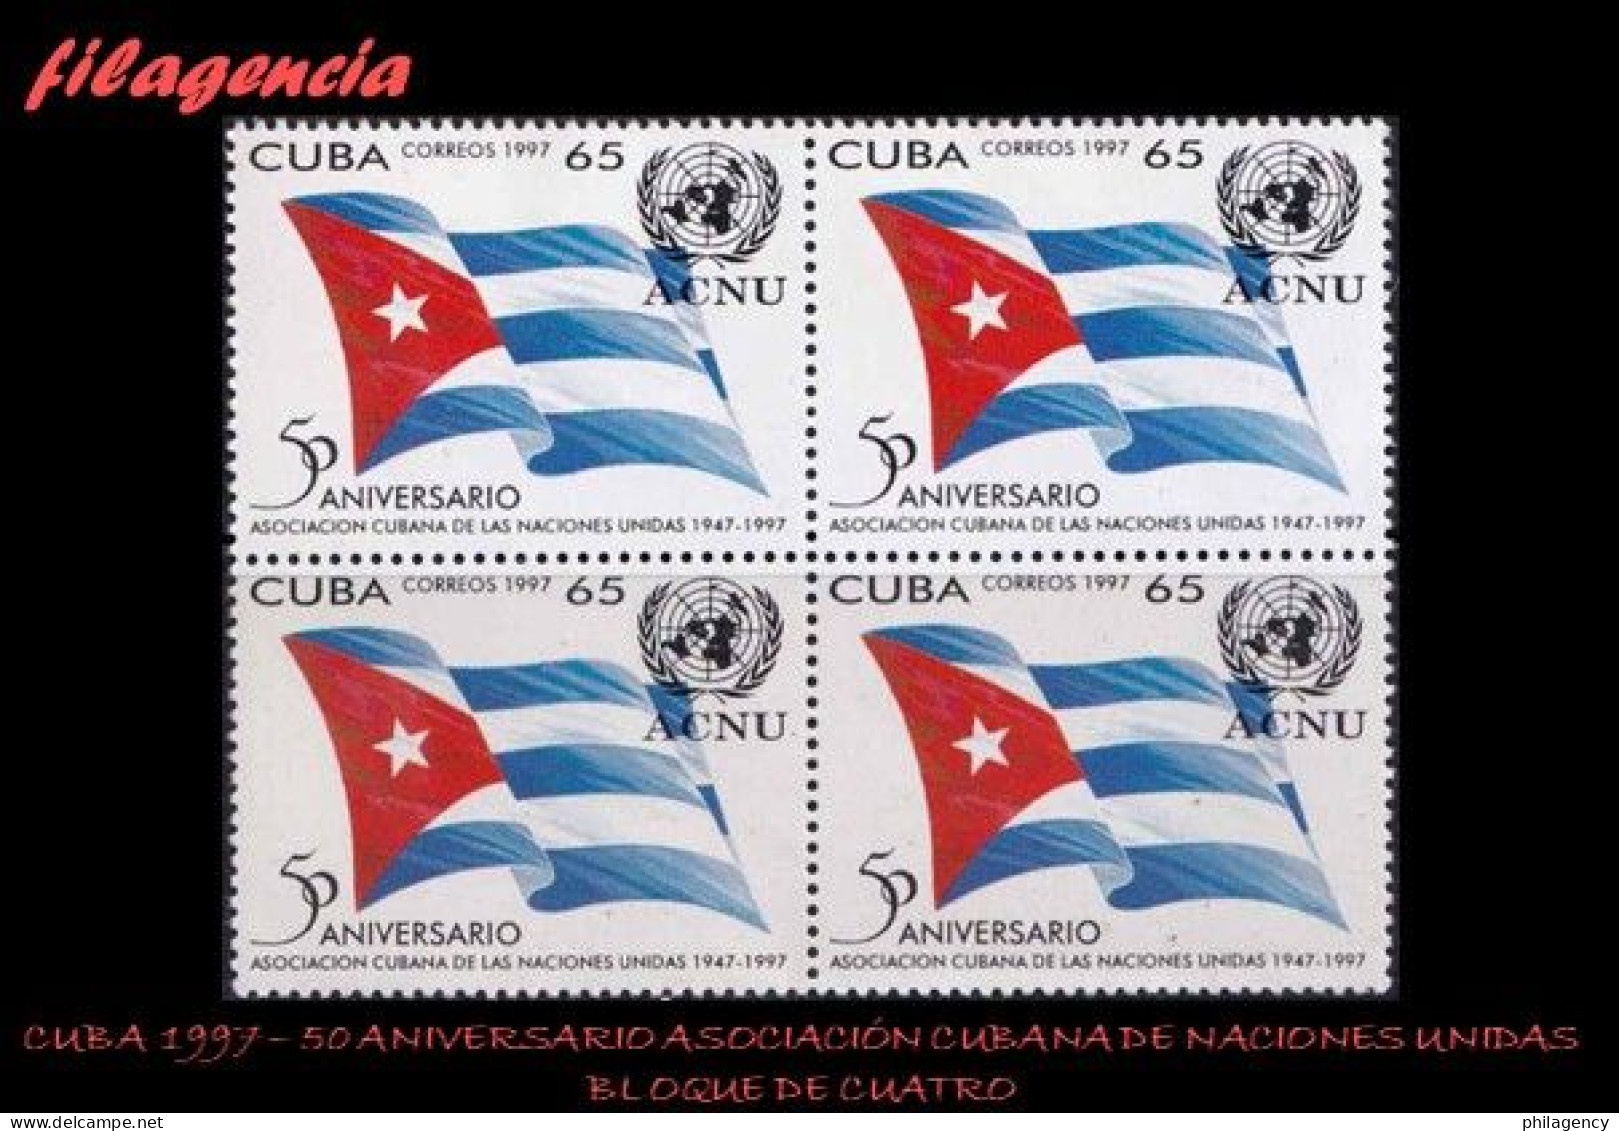 CUBA. BLOQUES DE CUATRO. 1997-13 CINCUENTENARIO DE LA ASOCIACIÓN CUBANA DE NACIONES UNIDAS - Nuevos